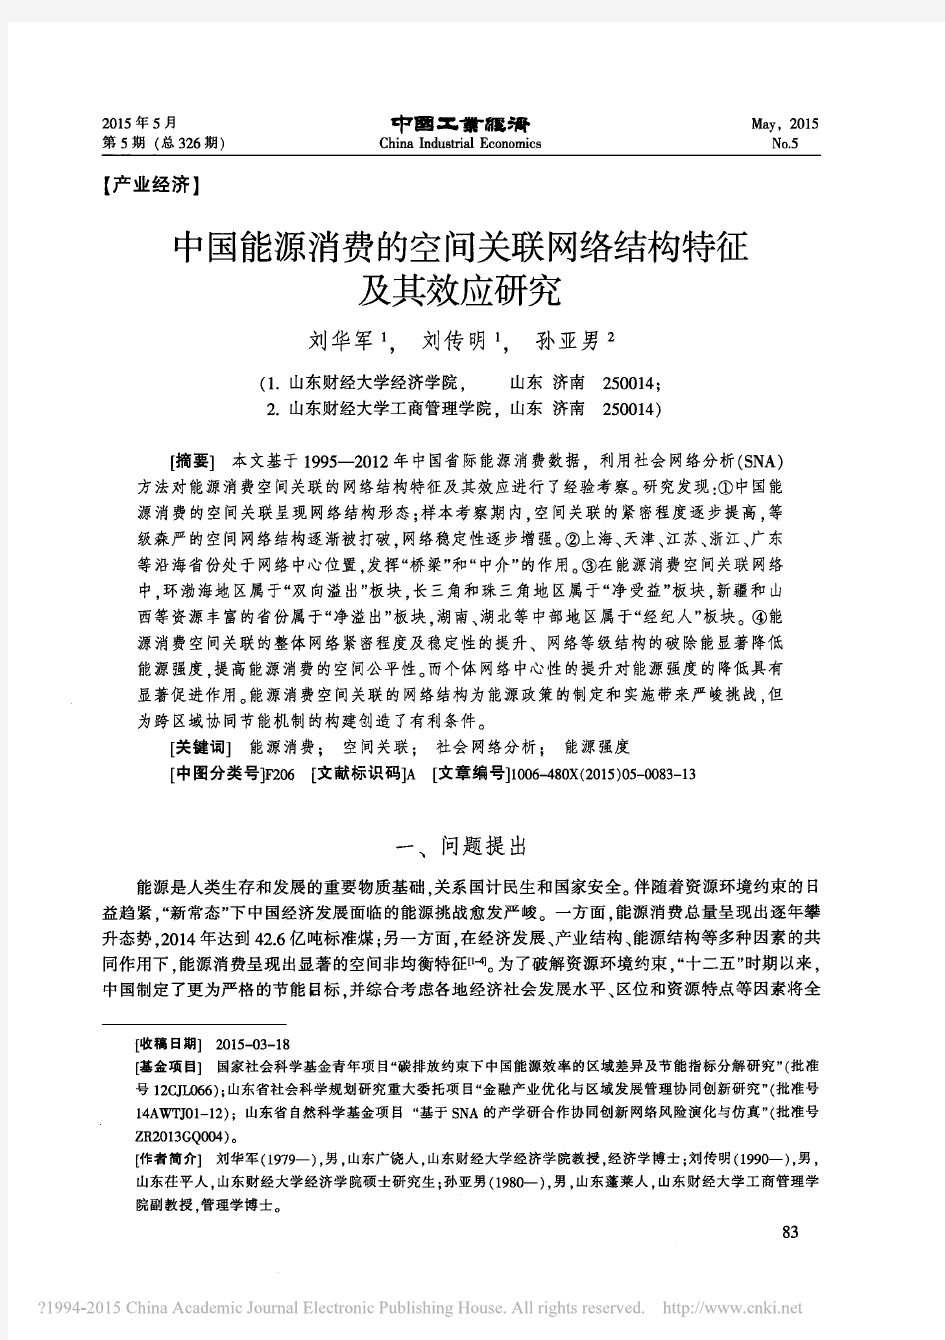 中国能源消费的空间关联网络结构特征及其效应研究_刘华军